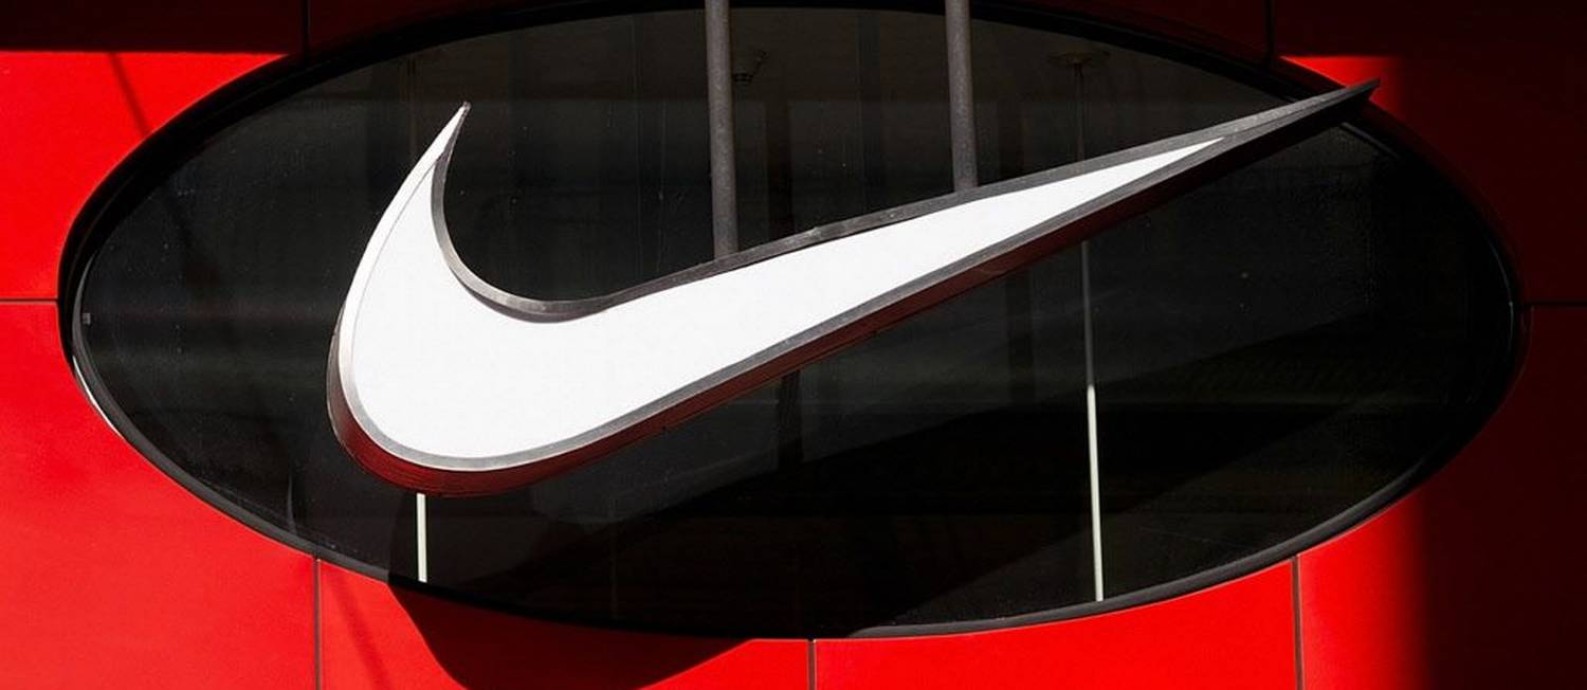 Logotipo da Nike em loja de São Francisco, na Califórnia Foto: David Paul Morris / Bloomberg